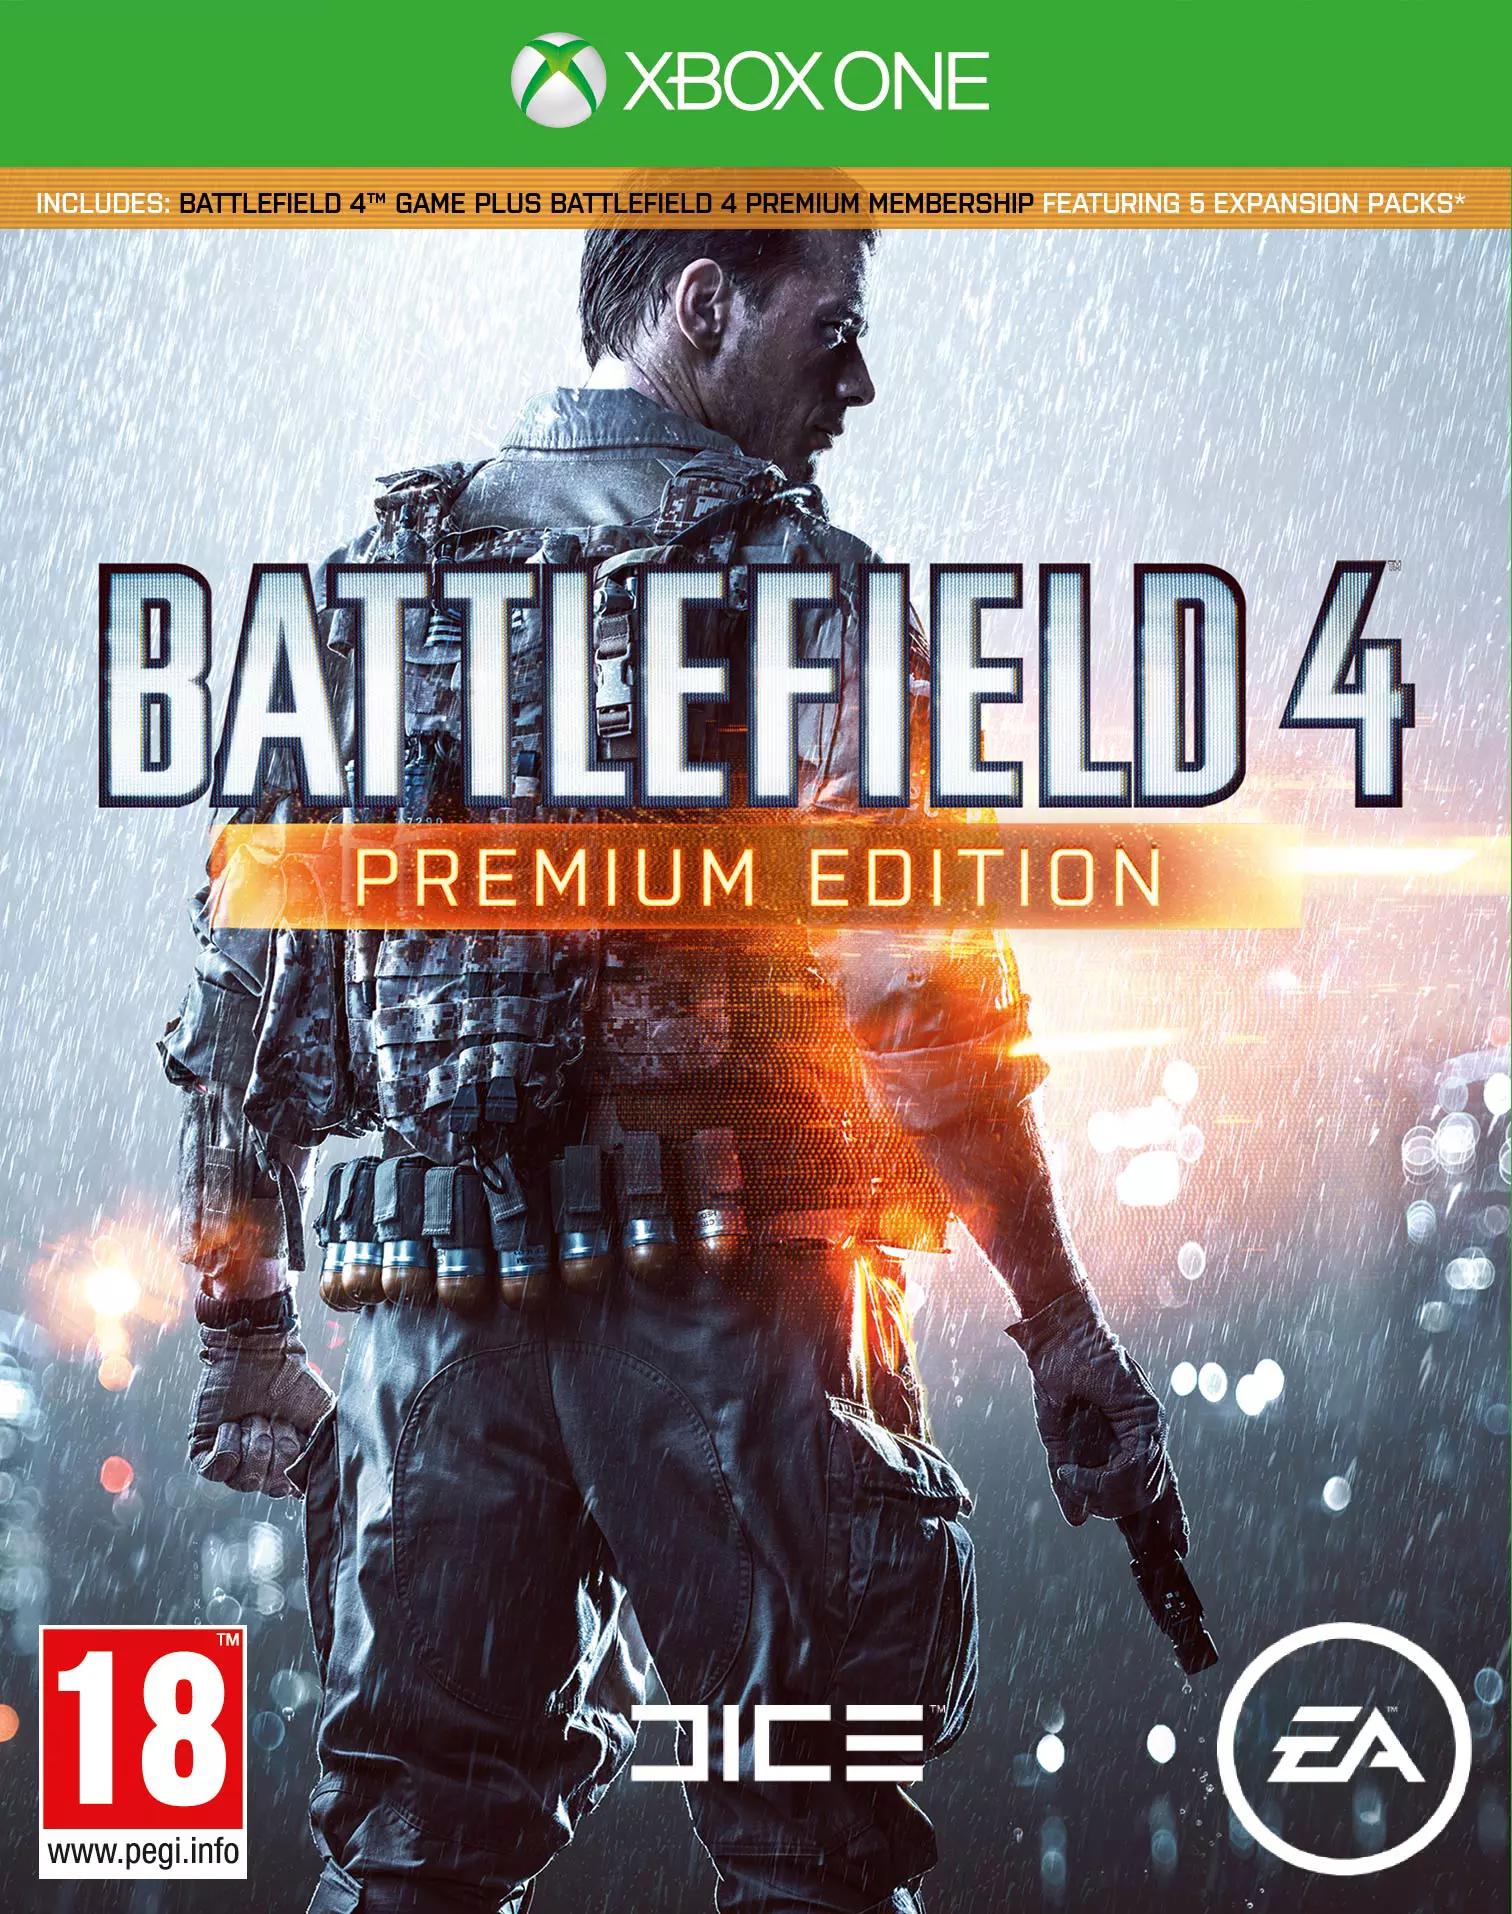 Battlefield Premium Edition